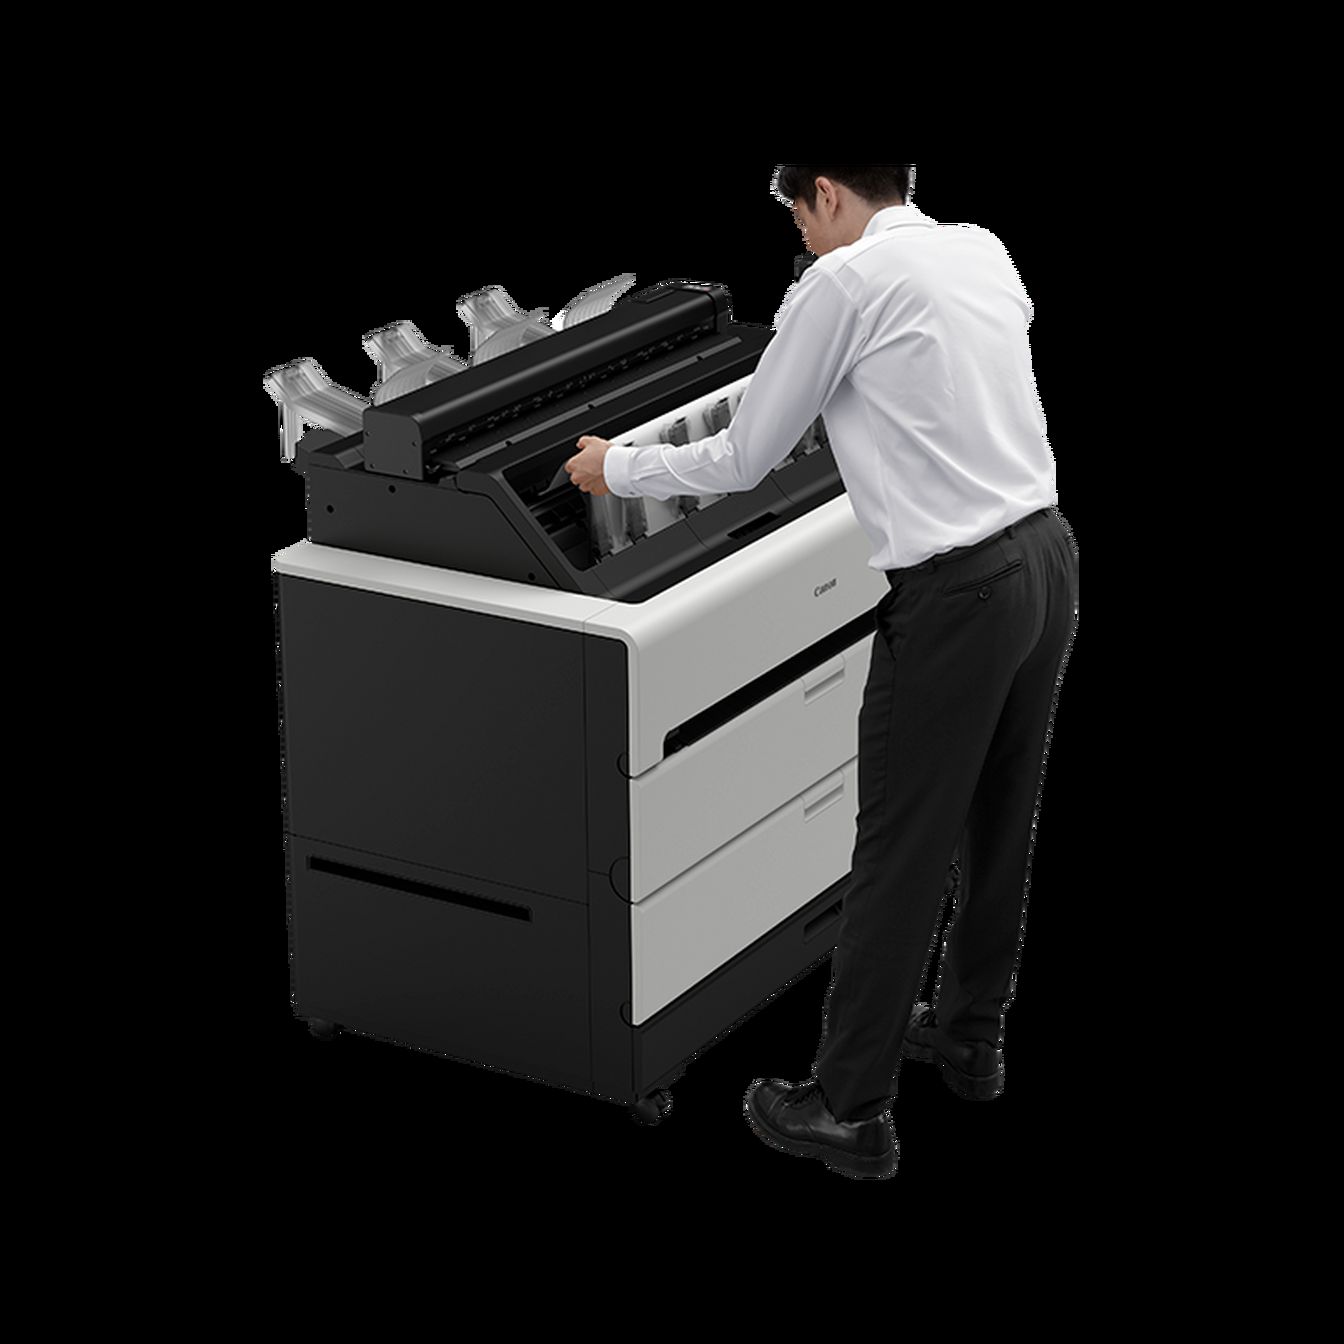 imprimantes-grand-format - imprimante-multifonction-grand-format - TZ-30000 MFP Z36 - canon - Tinsal - Algérie